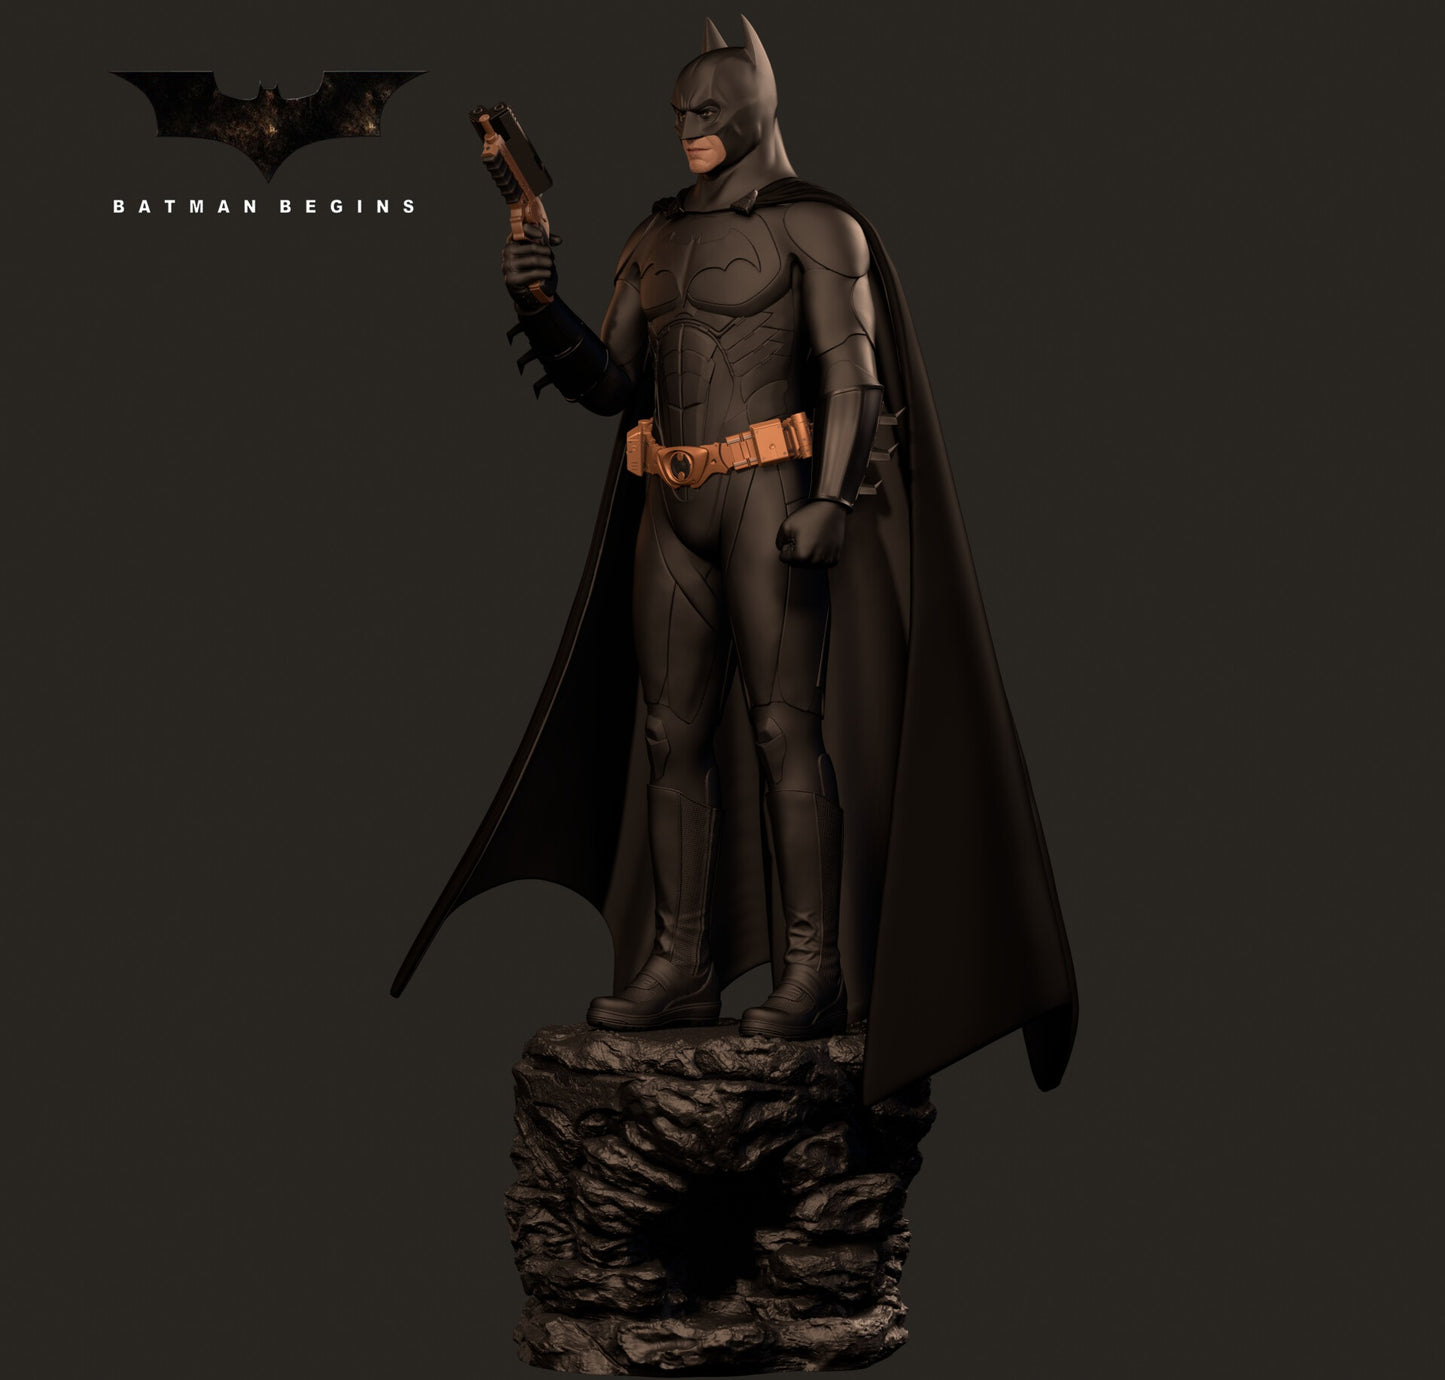 Batman Begins DC Movie Character STL File 3D Printing Digital Movie Figure STL File S055